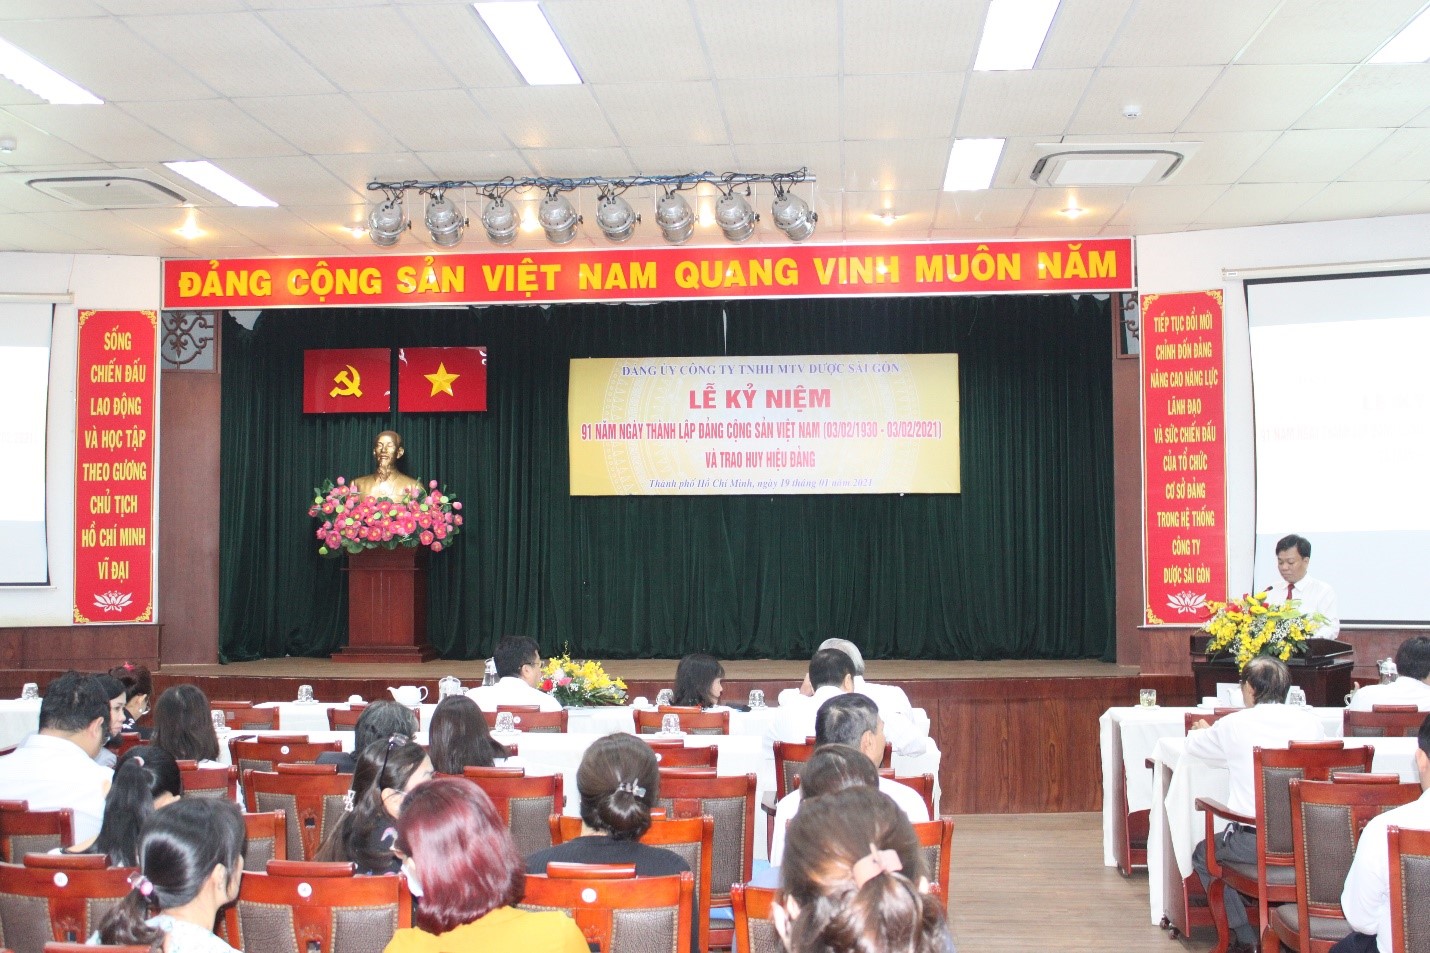 Lễ Kỷ niệm 91 năm Ngày thành lập Đảng Cộng sản Việt Nam (3/2/1930- 3/2/2021) và Trao huy hiệu Đảng